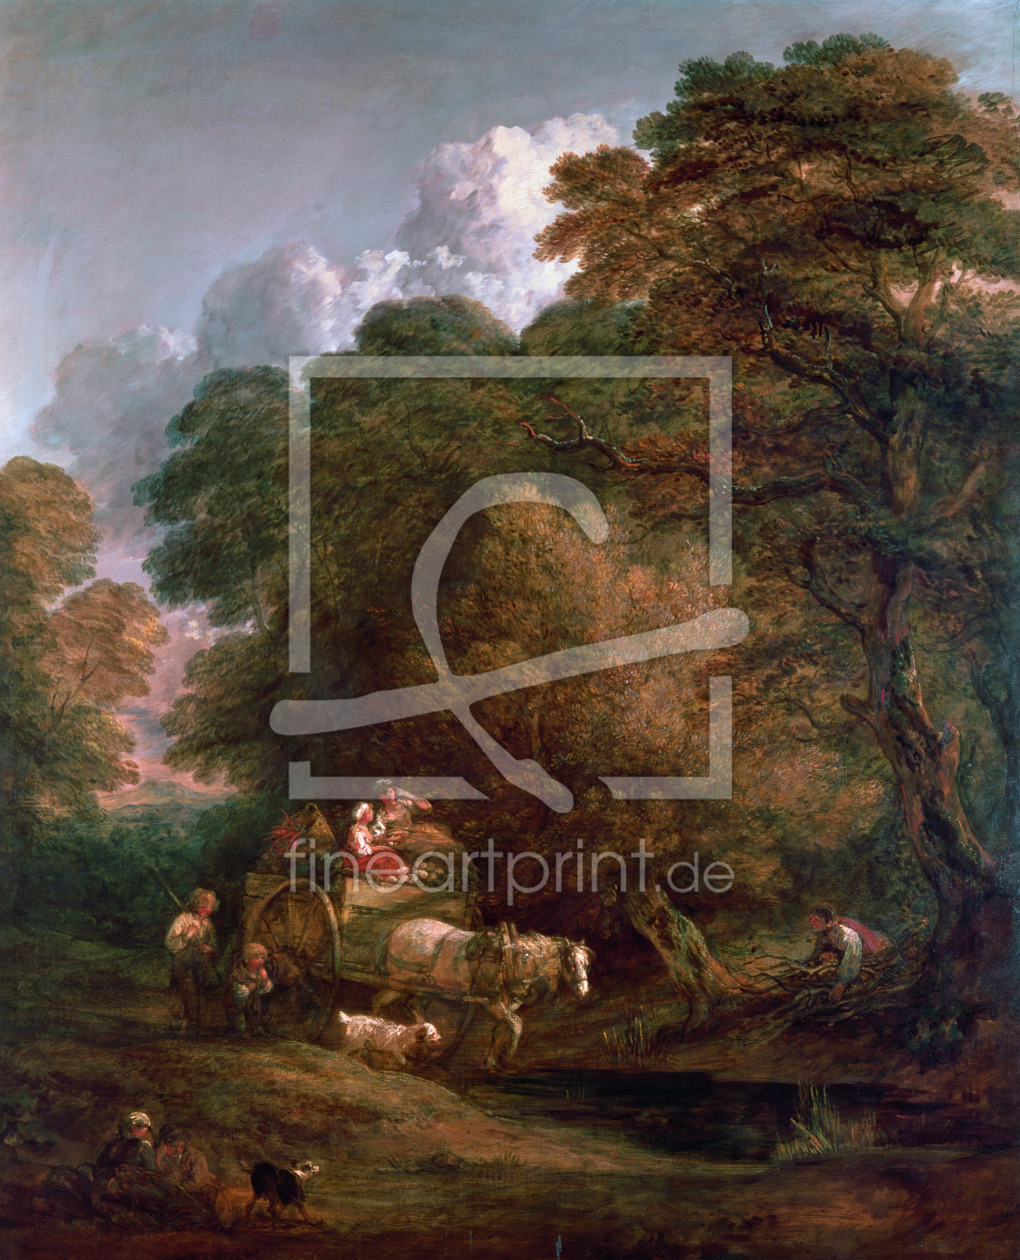 Bild-Nr.: 31000458 The Market Cart, 1786 erstellt von Gainsborough, Thomas